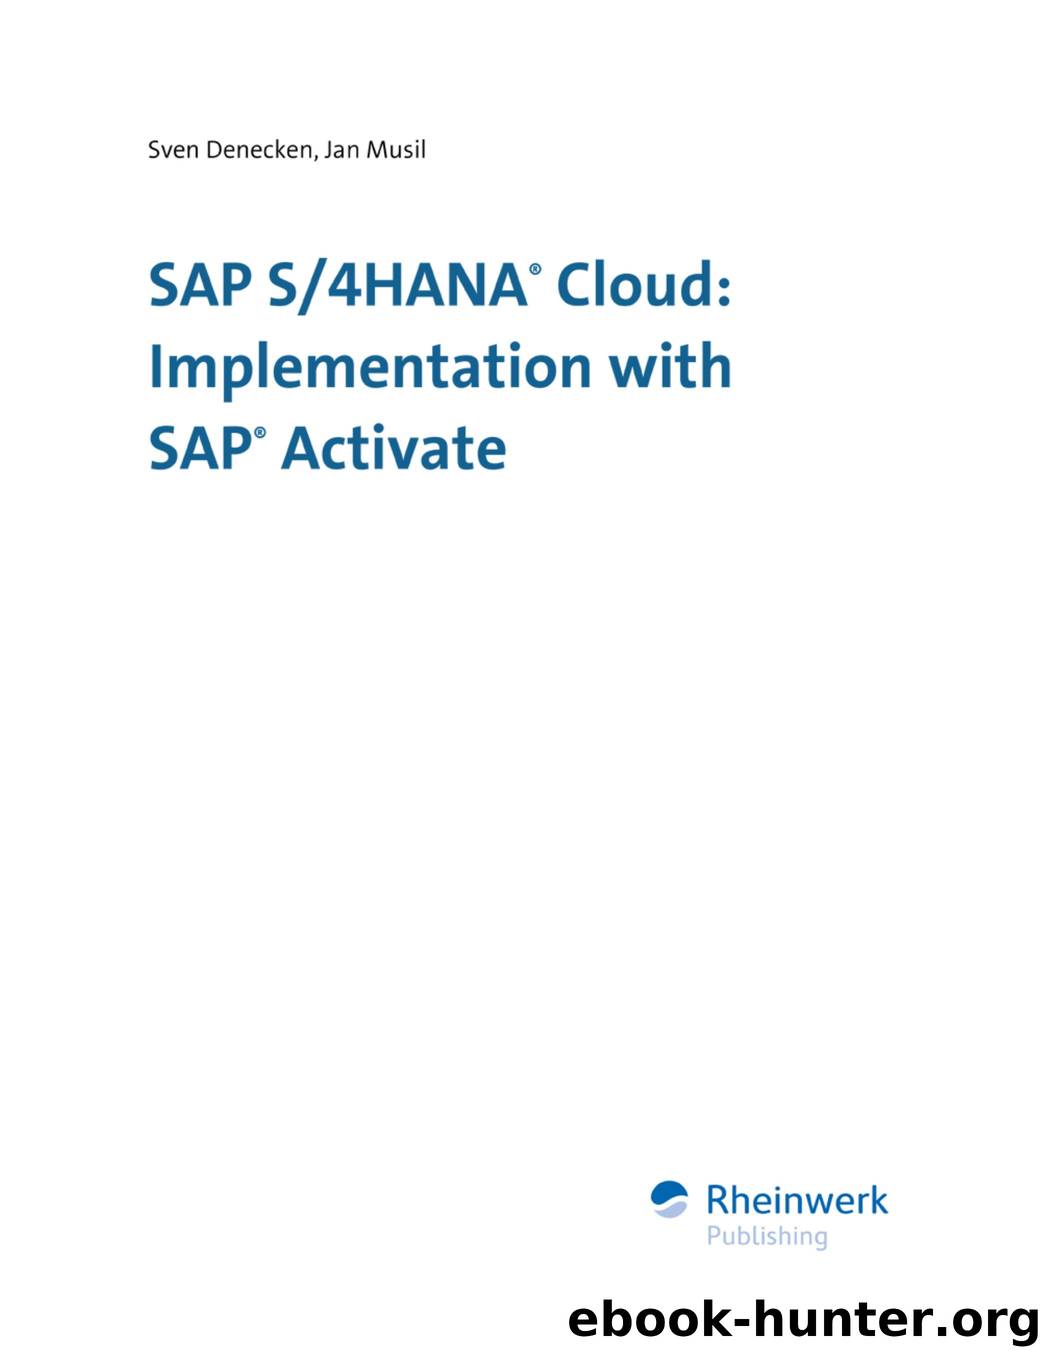 SAP S4HANA Cloud by Implementation & SAP Activate